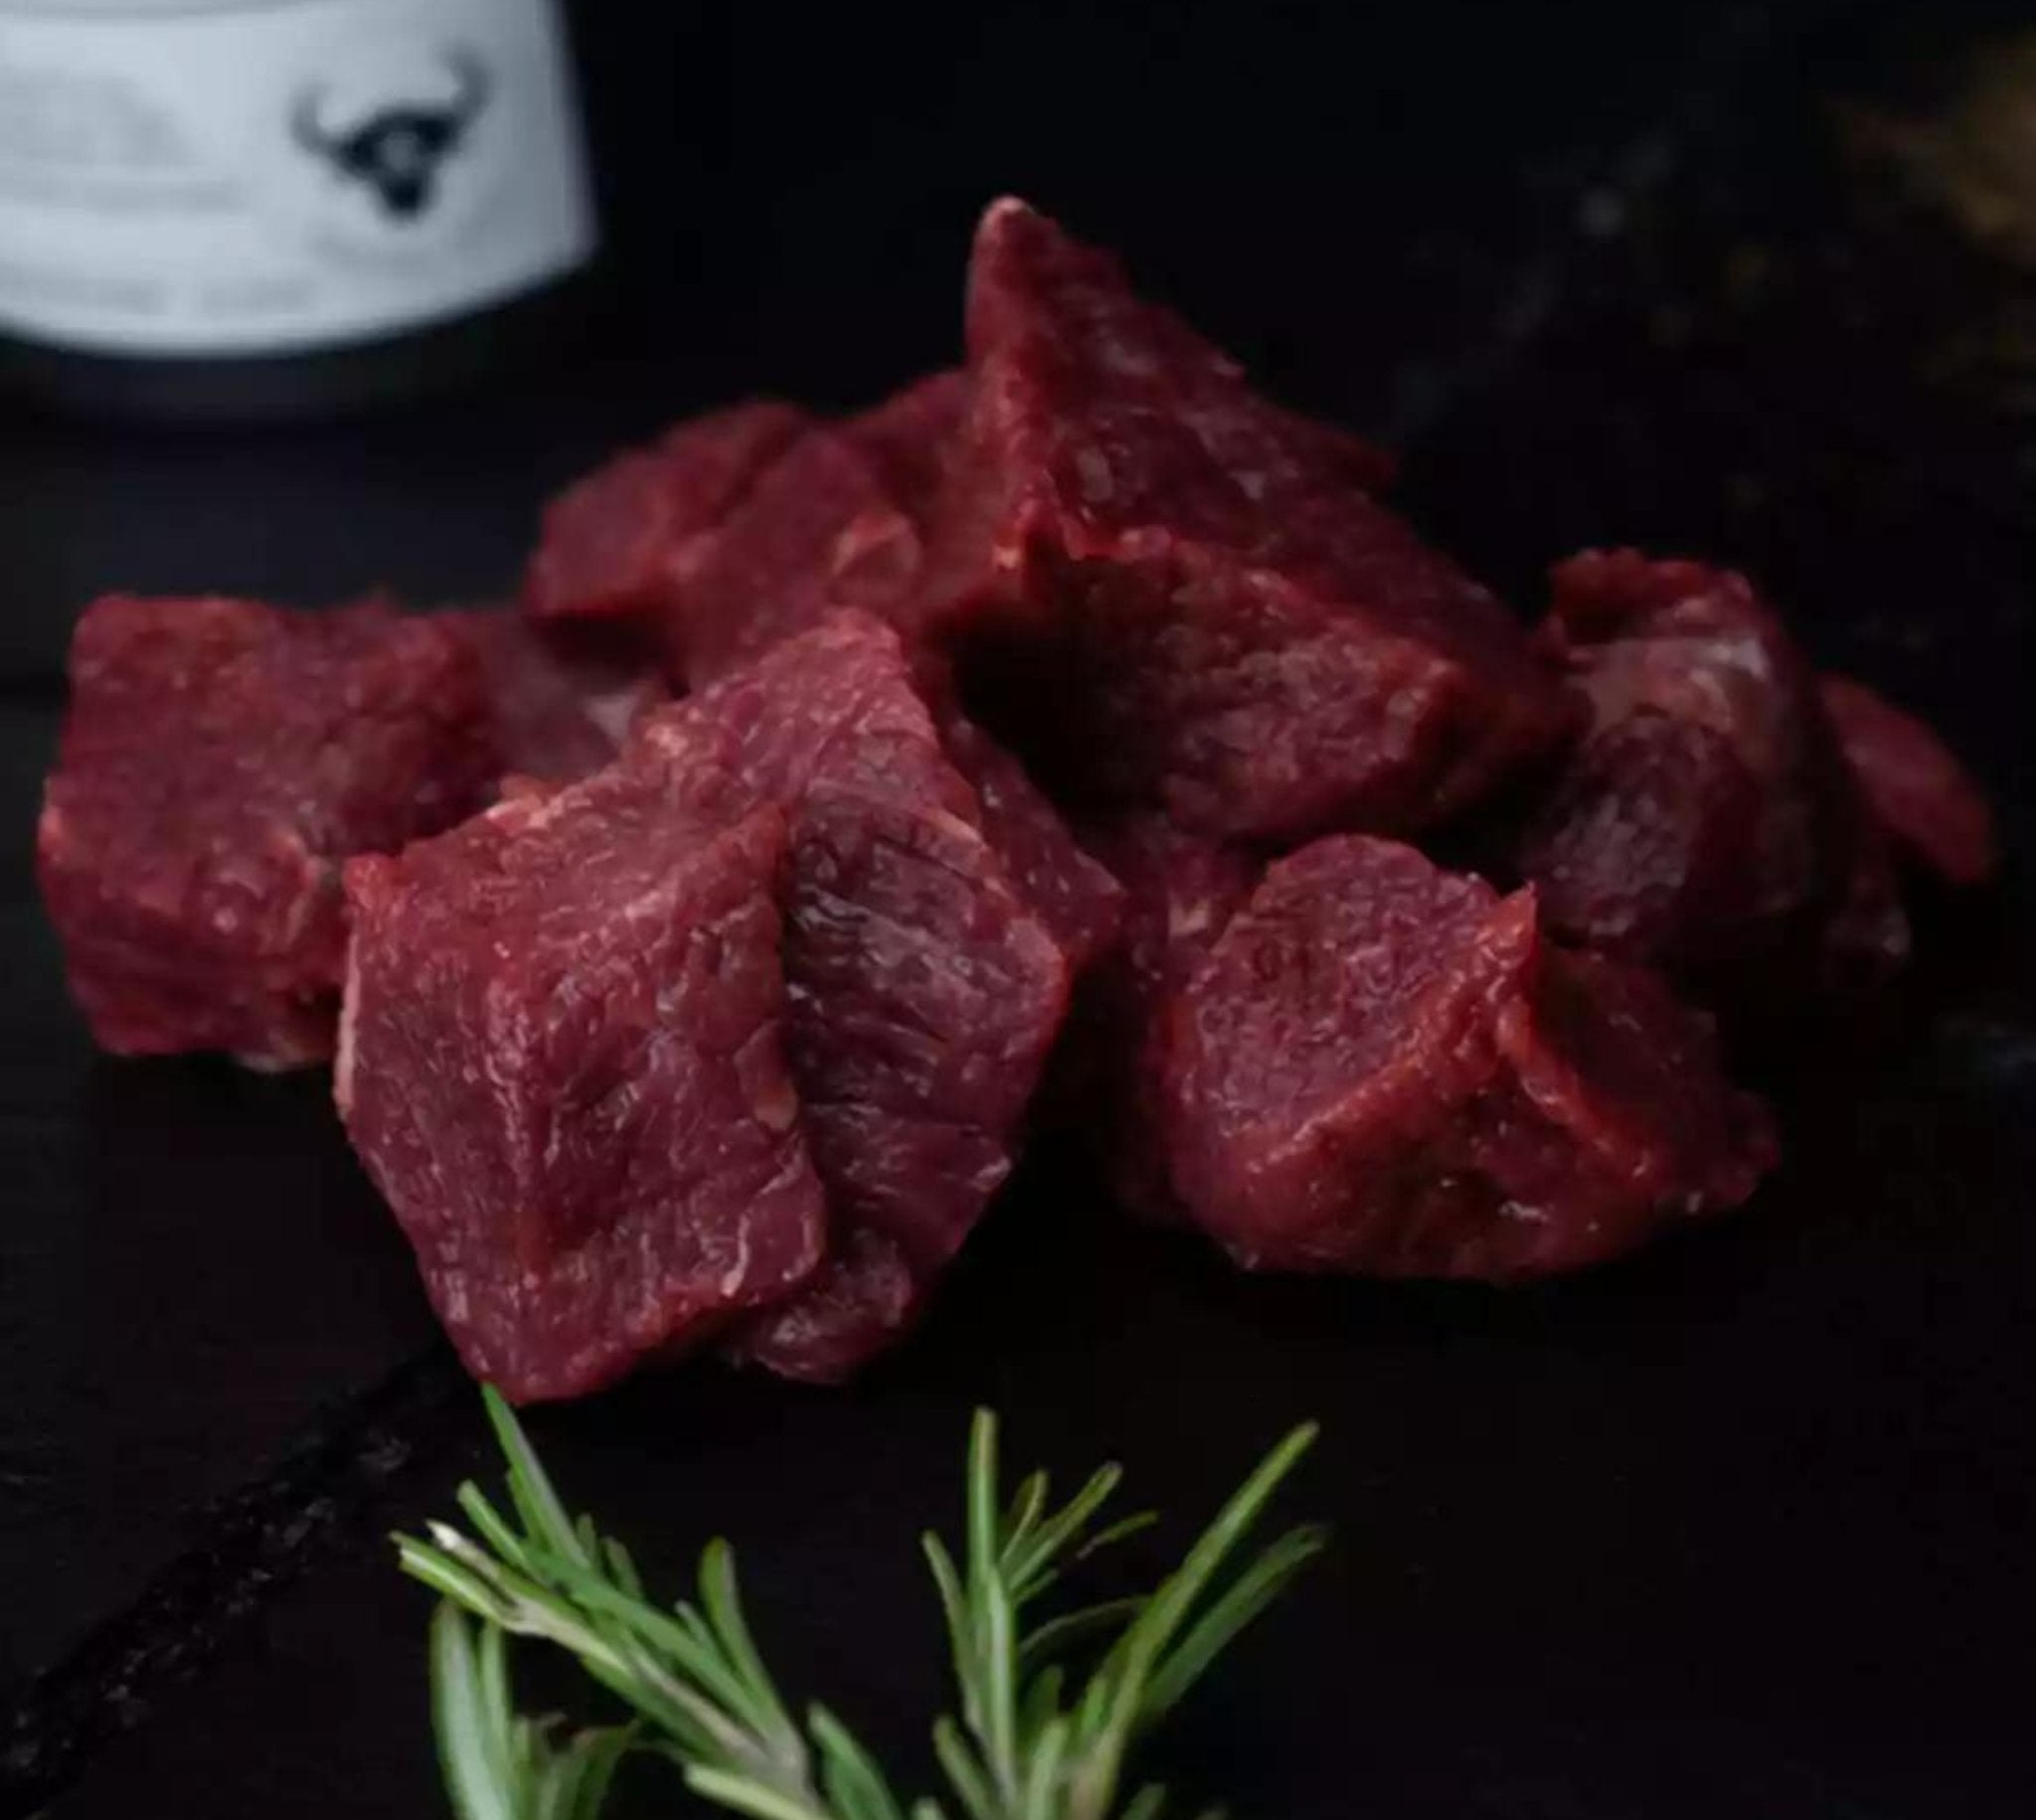 Bodensee Färse Gulasch - Qualitätsfleisch bei BüffelBill Kaufen Sie Gulasch vom Bodensee Färse bei BüffelBill - hochwertiges Fleisch für deftige Gerichte wie Eintöpfe & Schmorgerichte. Frische und Qualität garantiert. Genießen Sie den einzigartigen Geschm